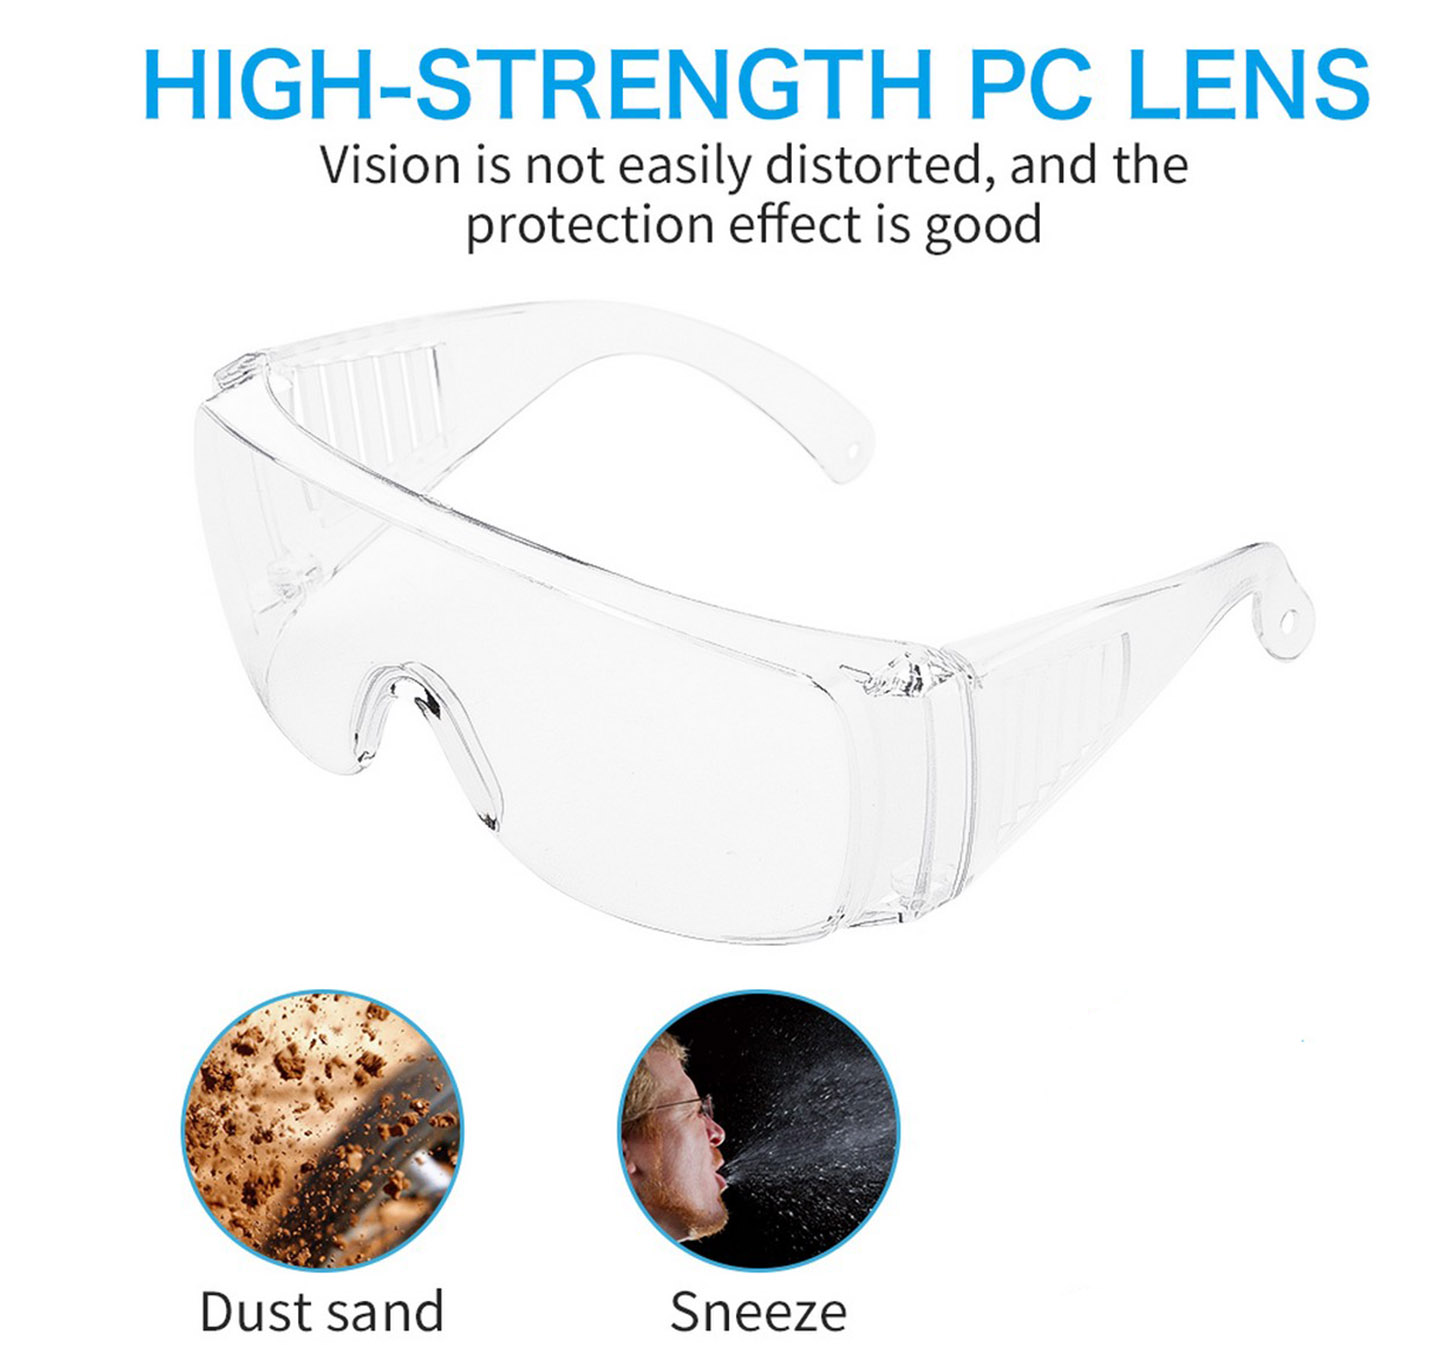 προστασία των ματιών από ιούς - γυαλιά